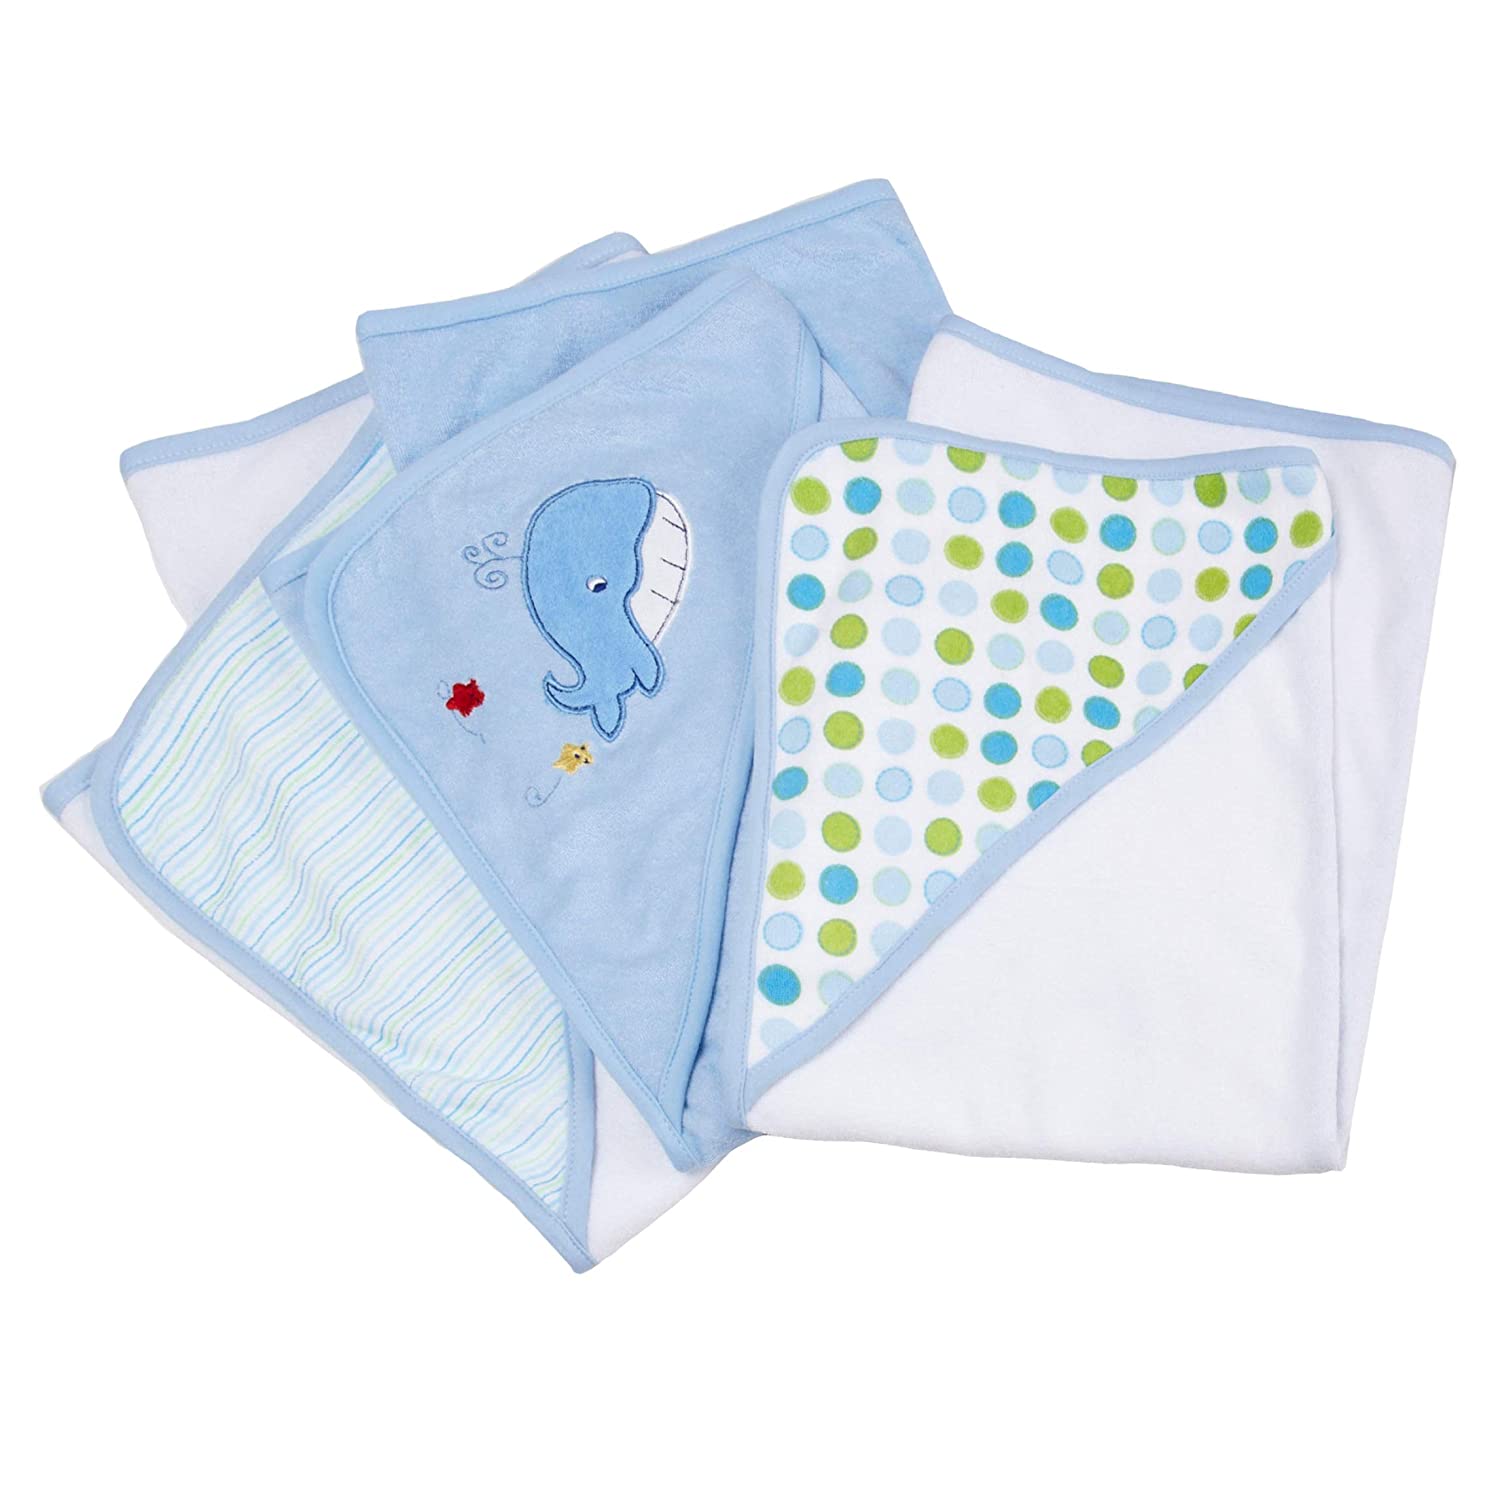 Spasilk Baby Soft Terry Hooded Towel Set, 3-Pack